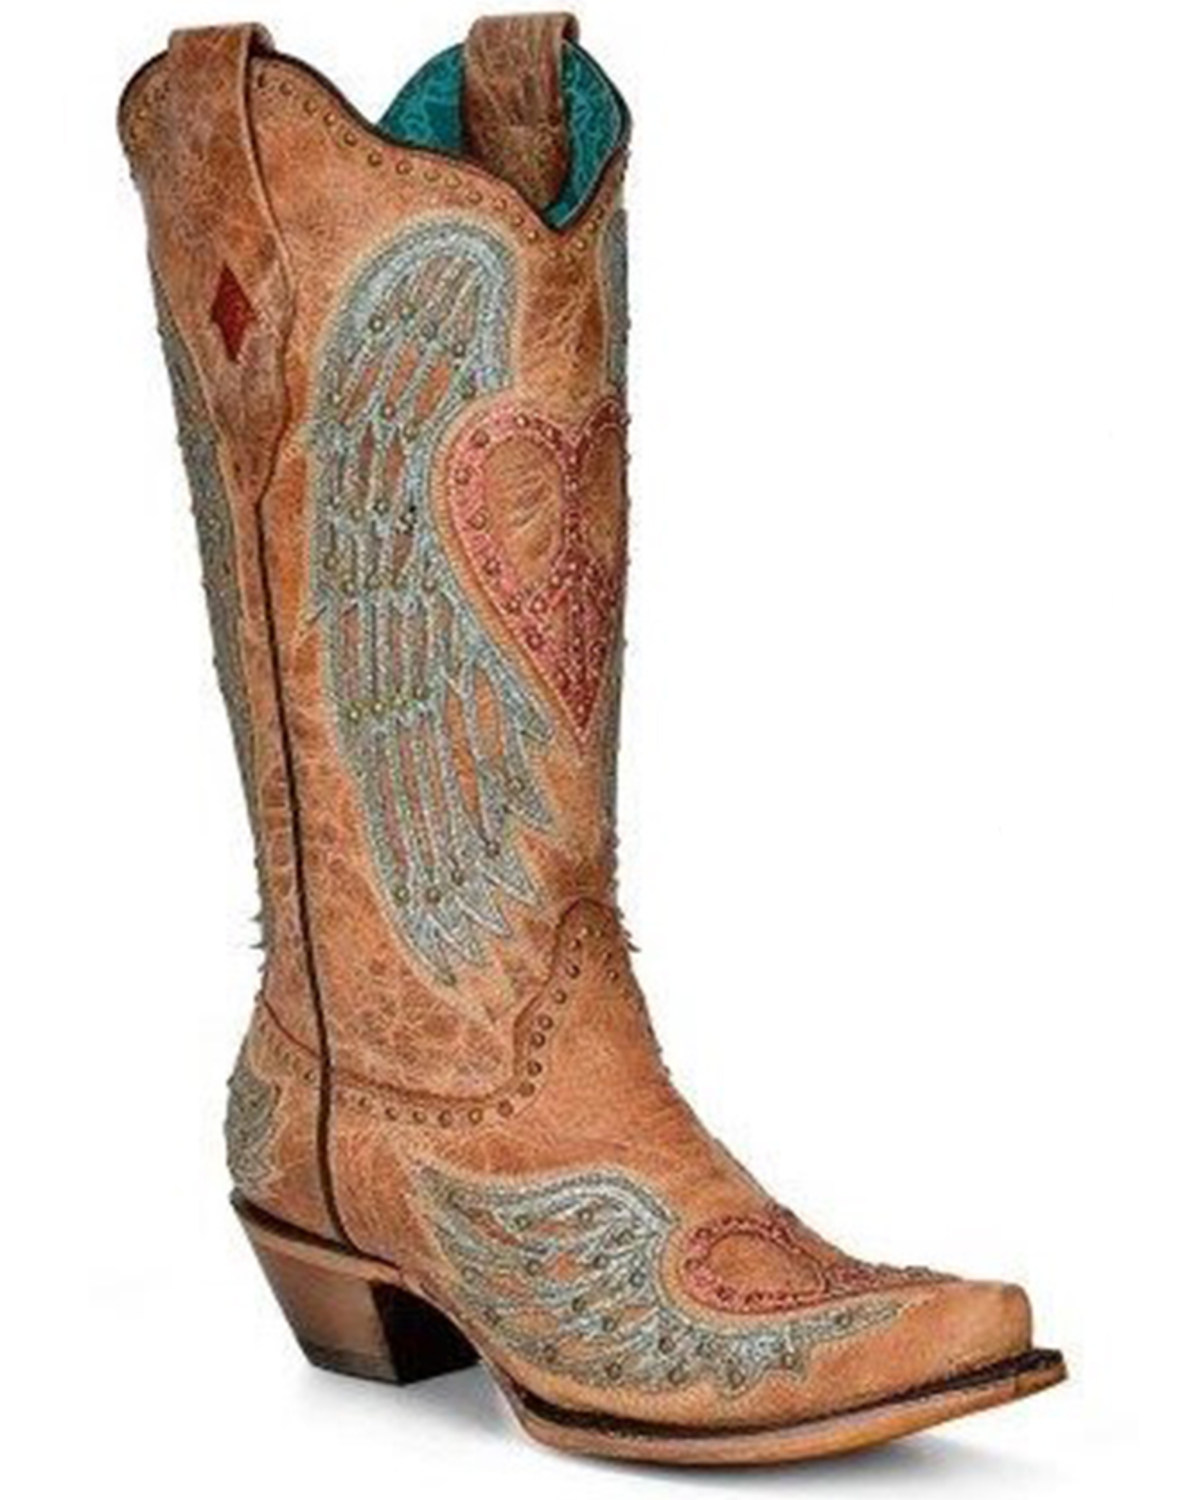 Corral Women's Heart & Wings Western Boots - Snip Toe